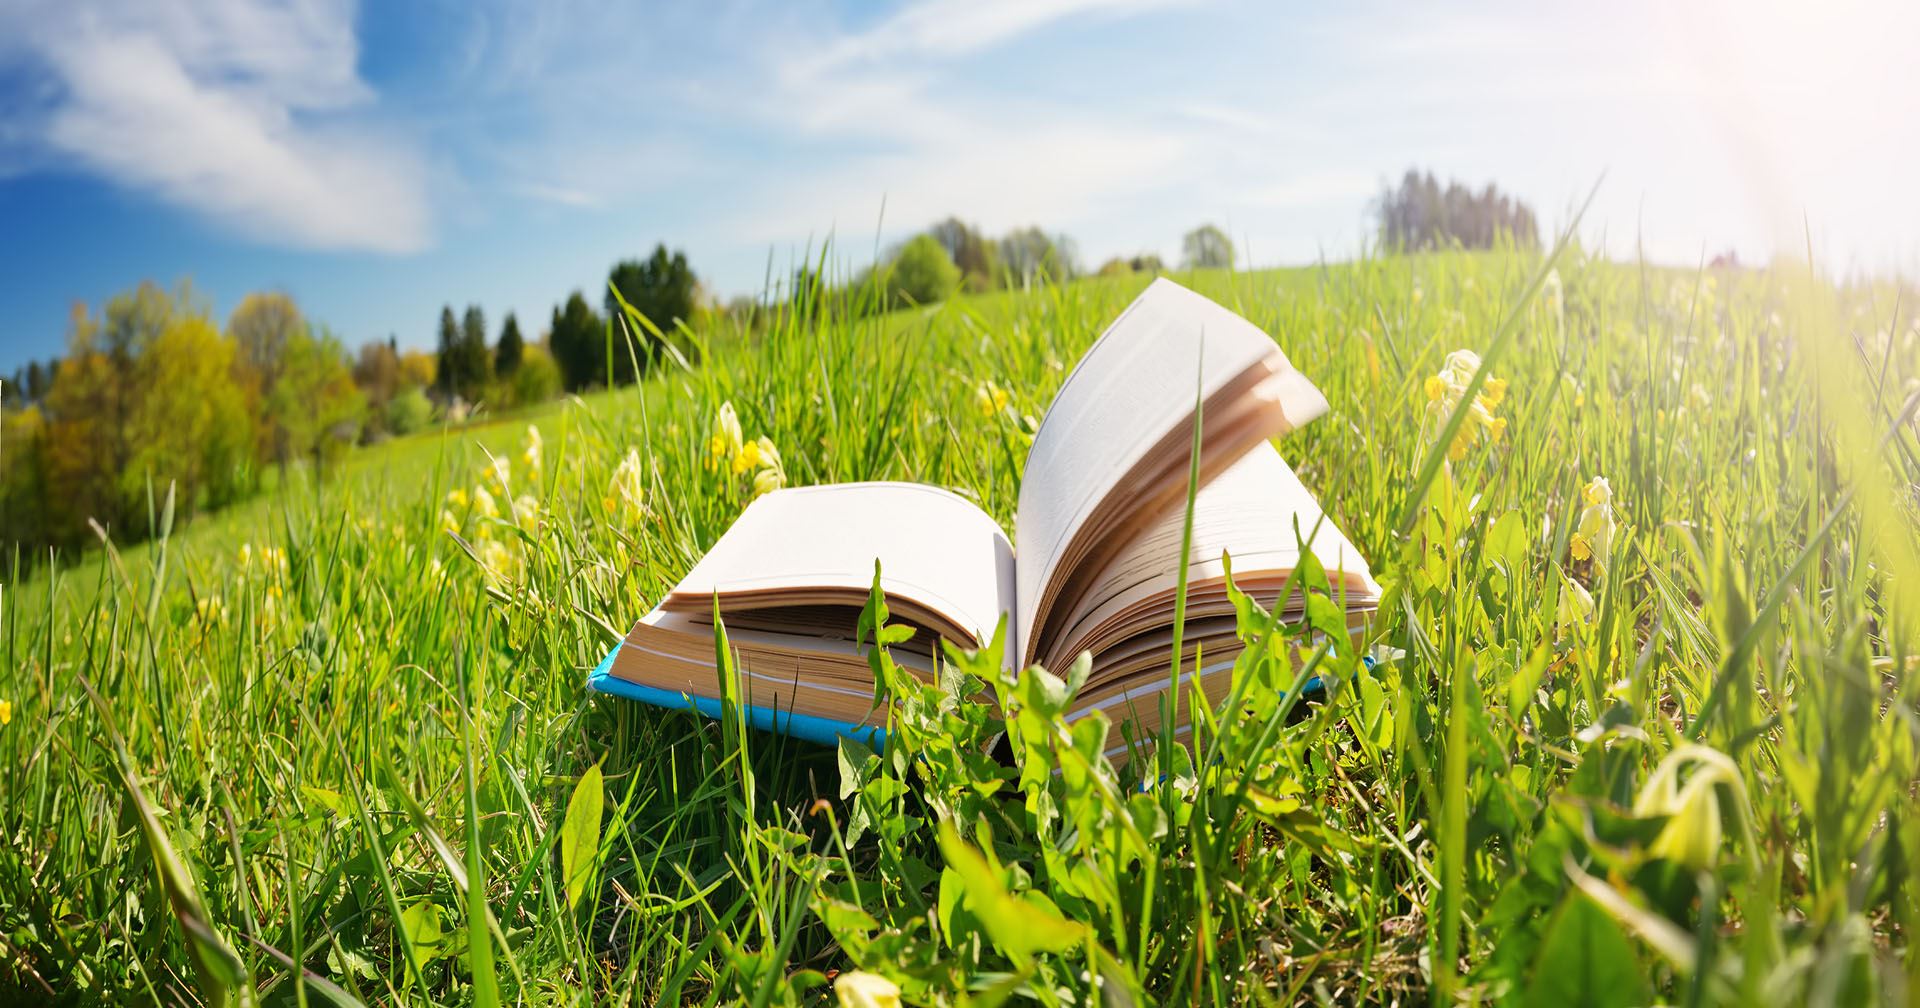 Open hardback book in a green field